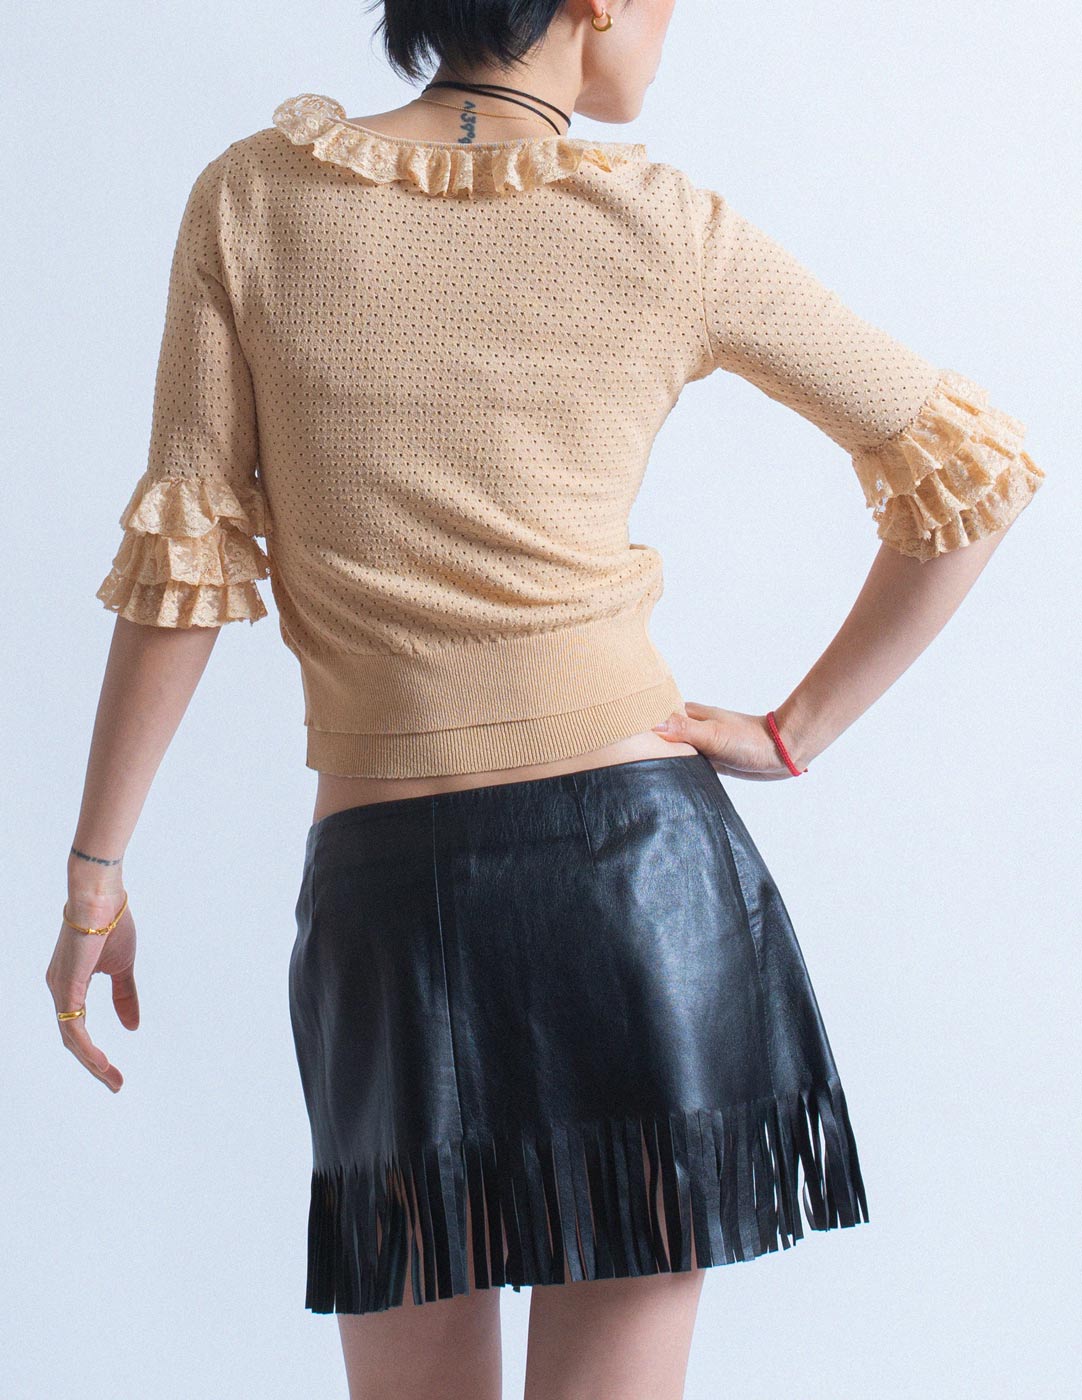 D&G fringe leather skirt back detail